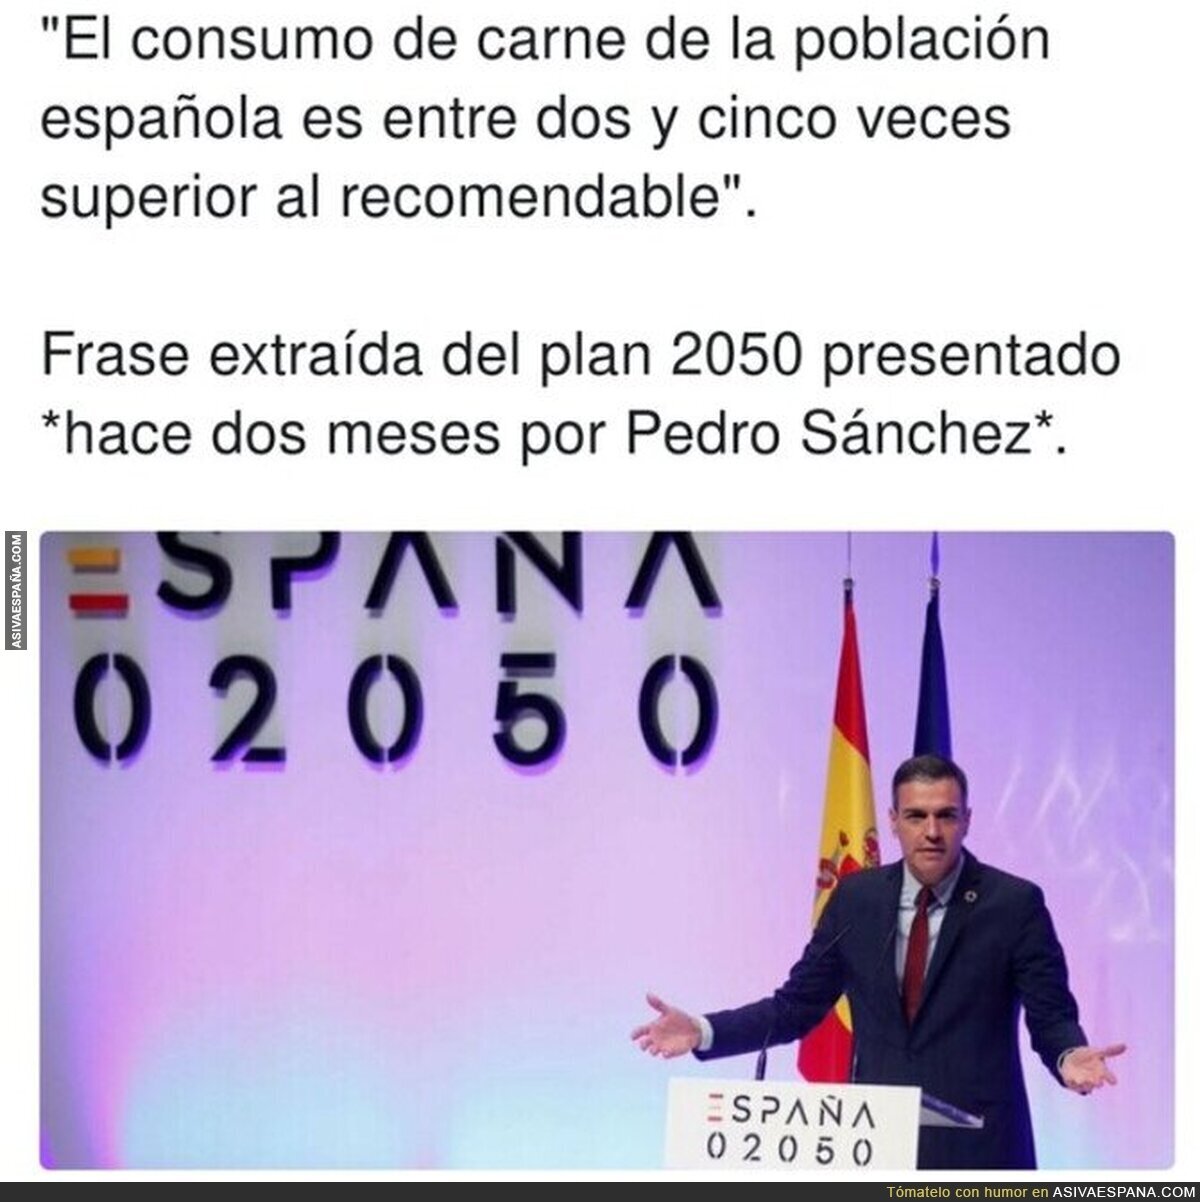 Pedro Sánchez debe pedir perdón, no solo al Sr Garzón, sino también a la sociedad española